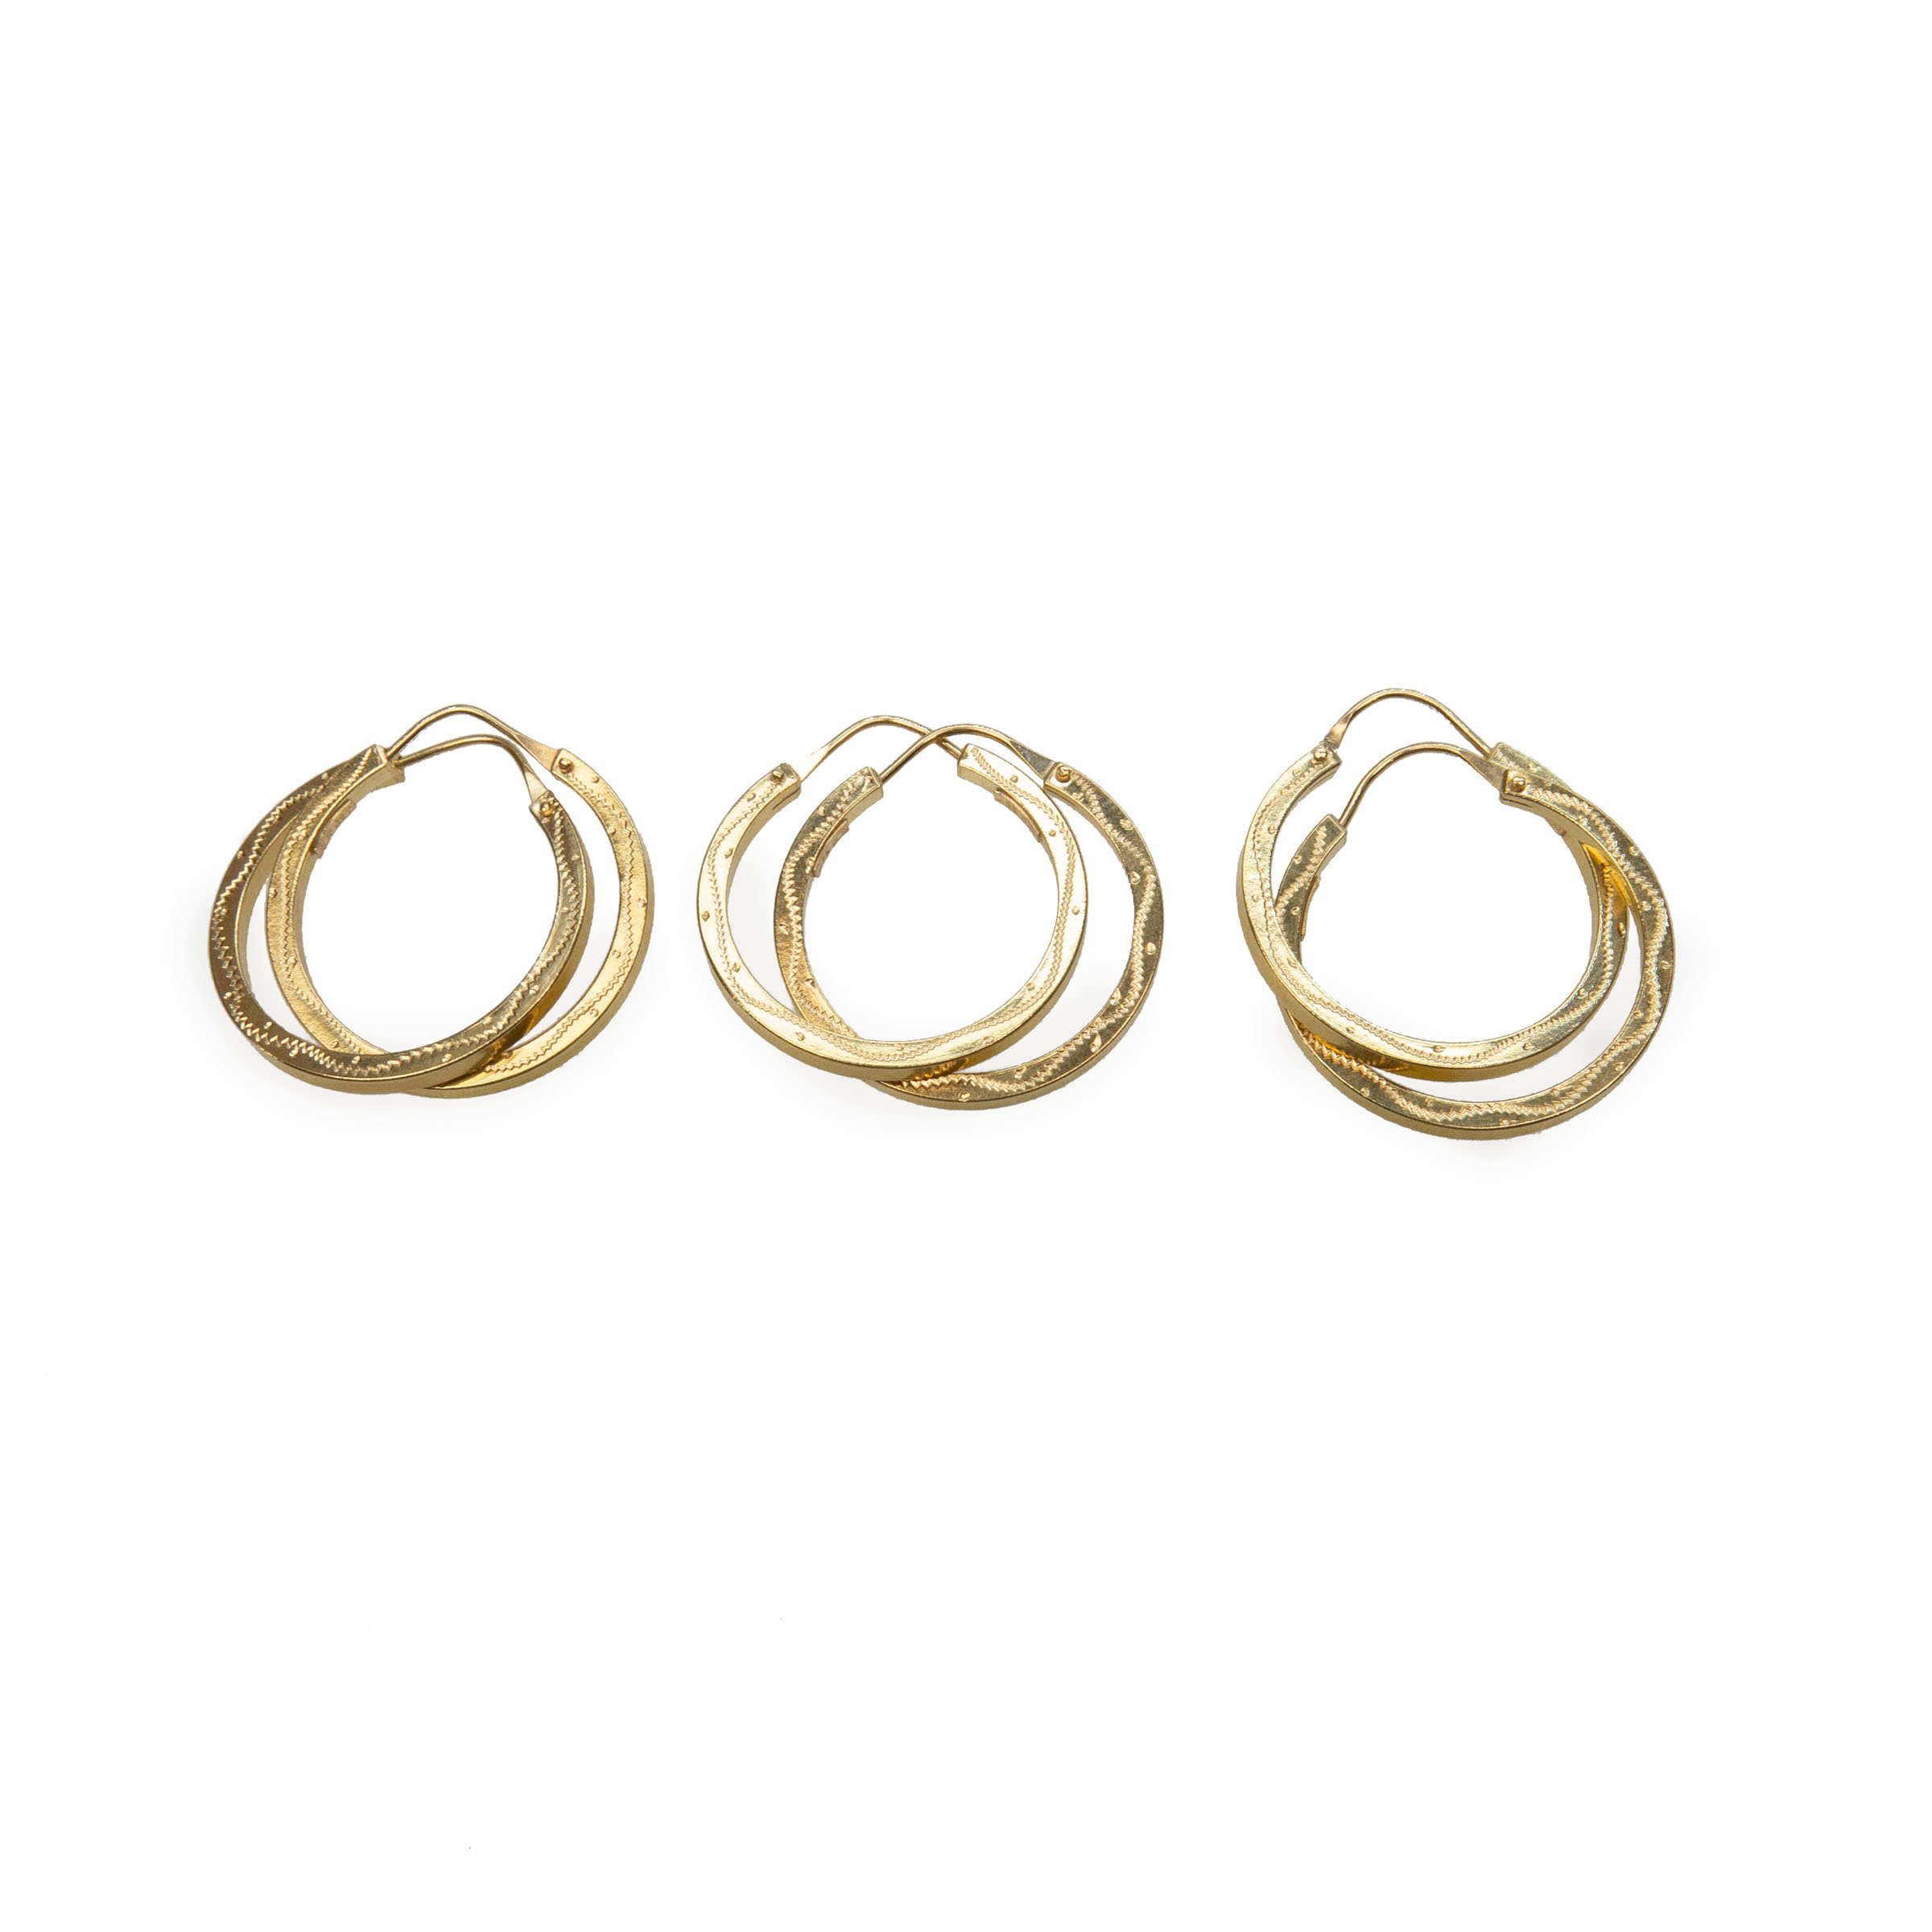 3 X Pairs Of 18K Yellow Gold Hoop Earrings